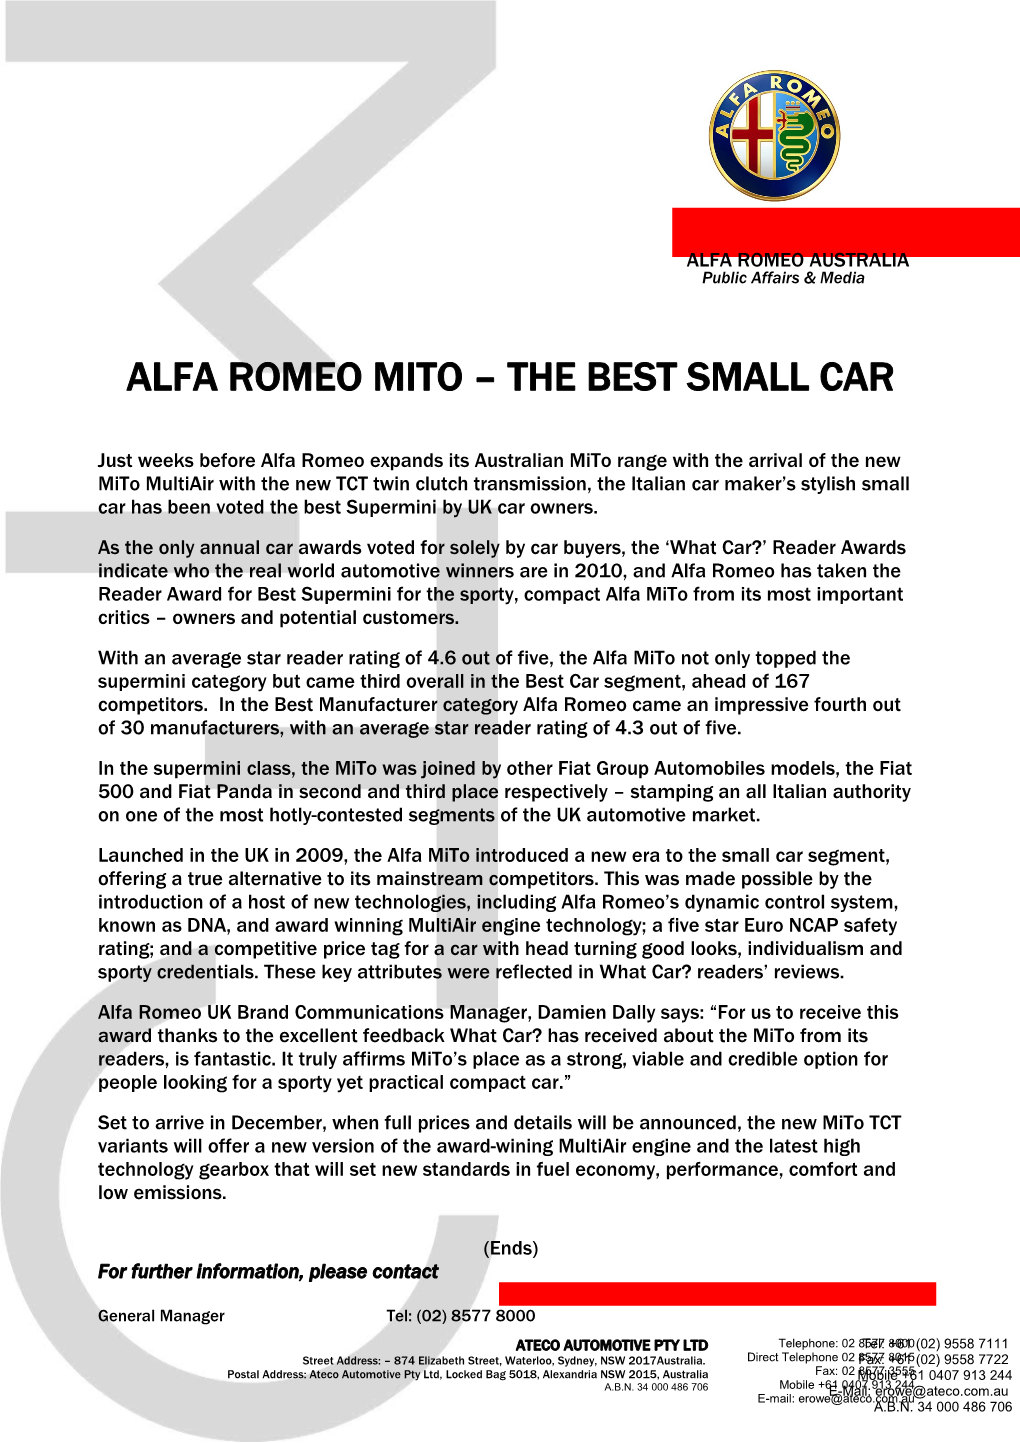 Alfa Romeo Mito the Best Small Car